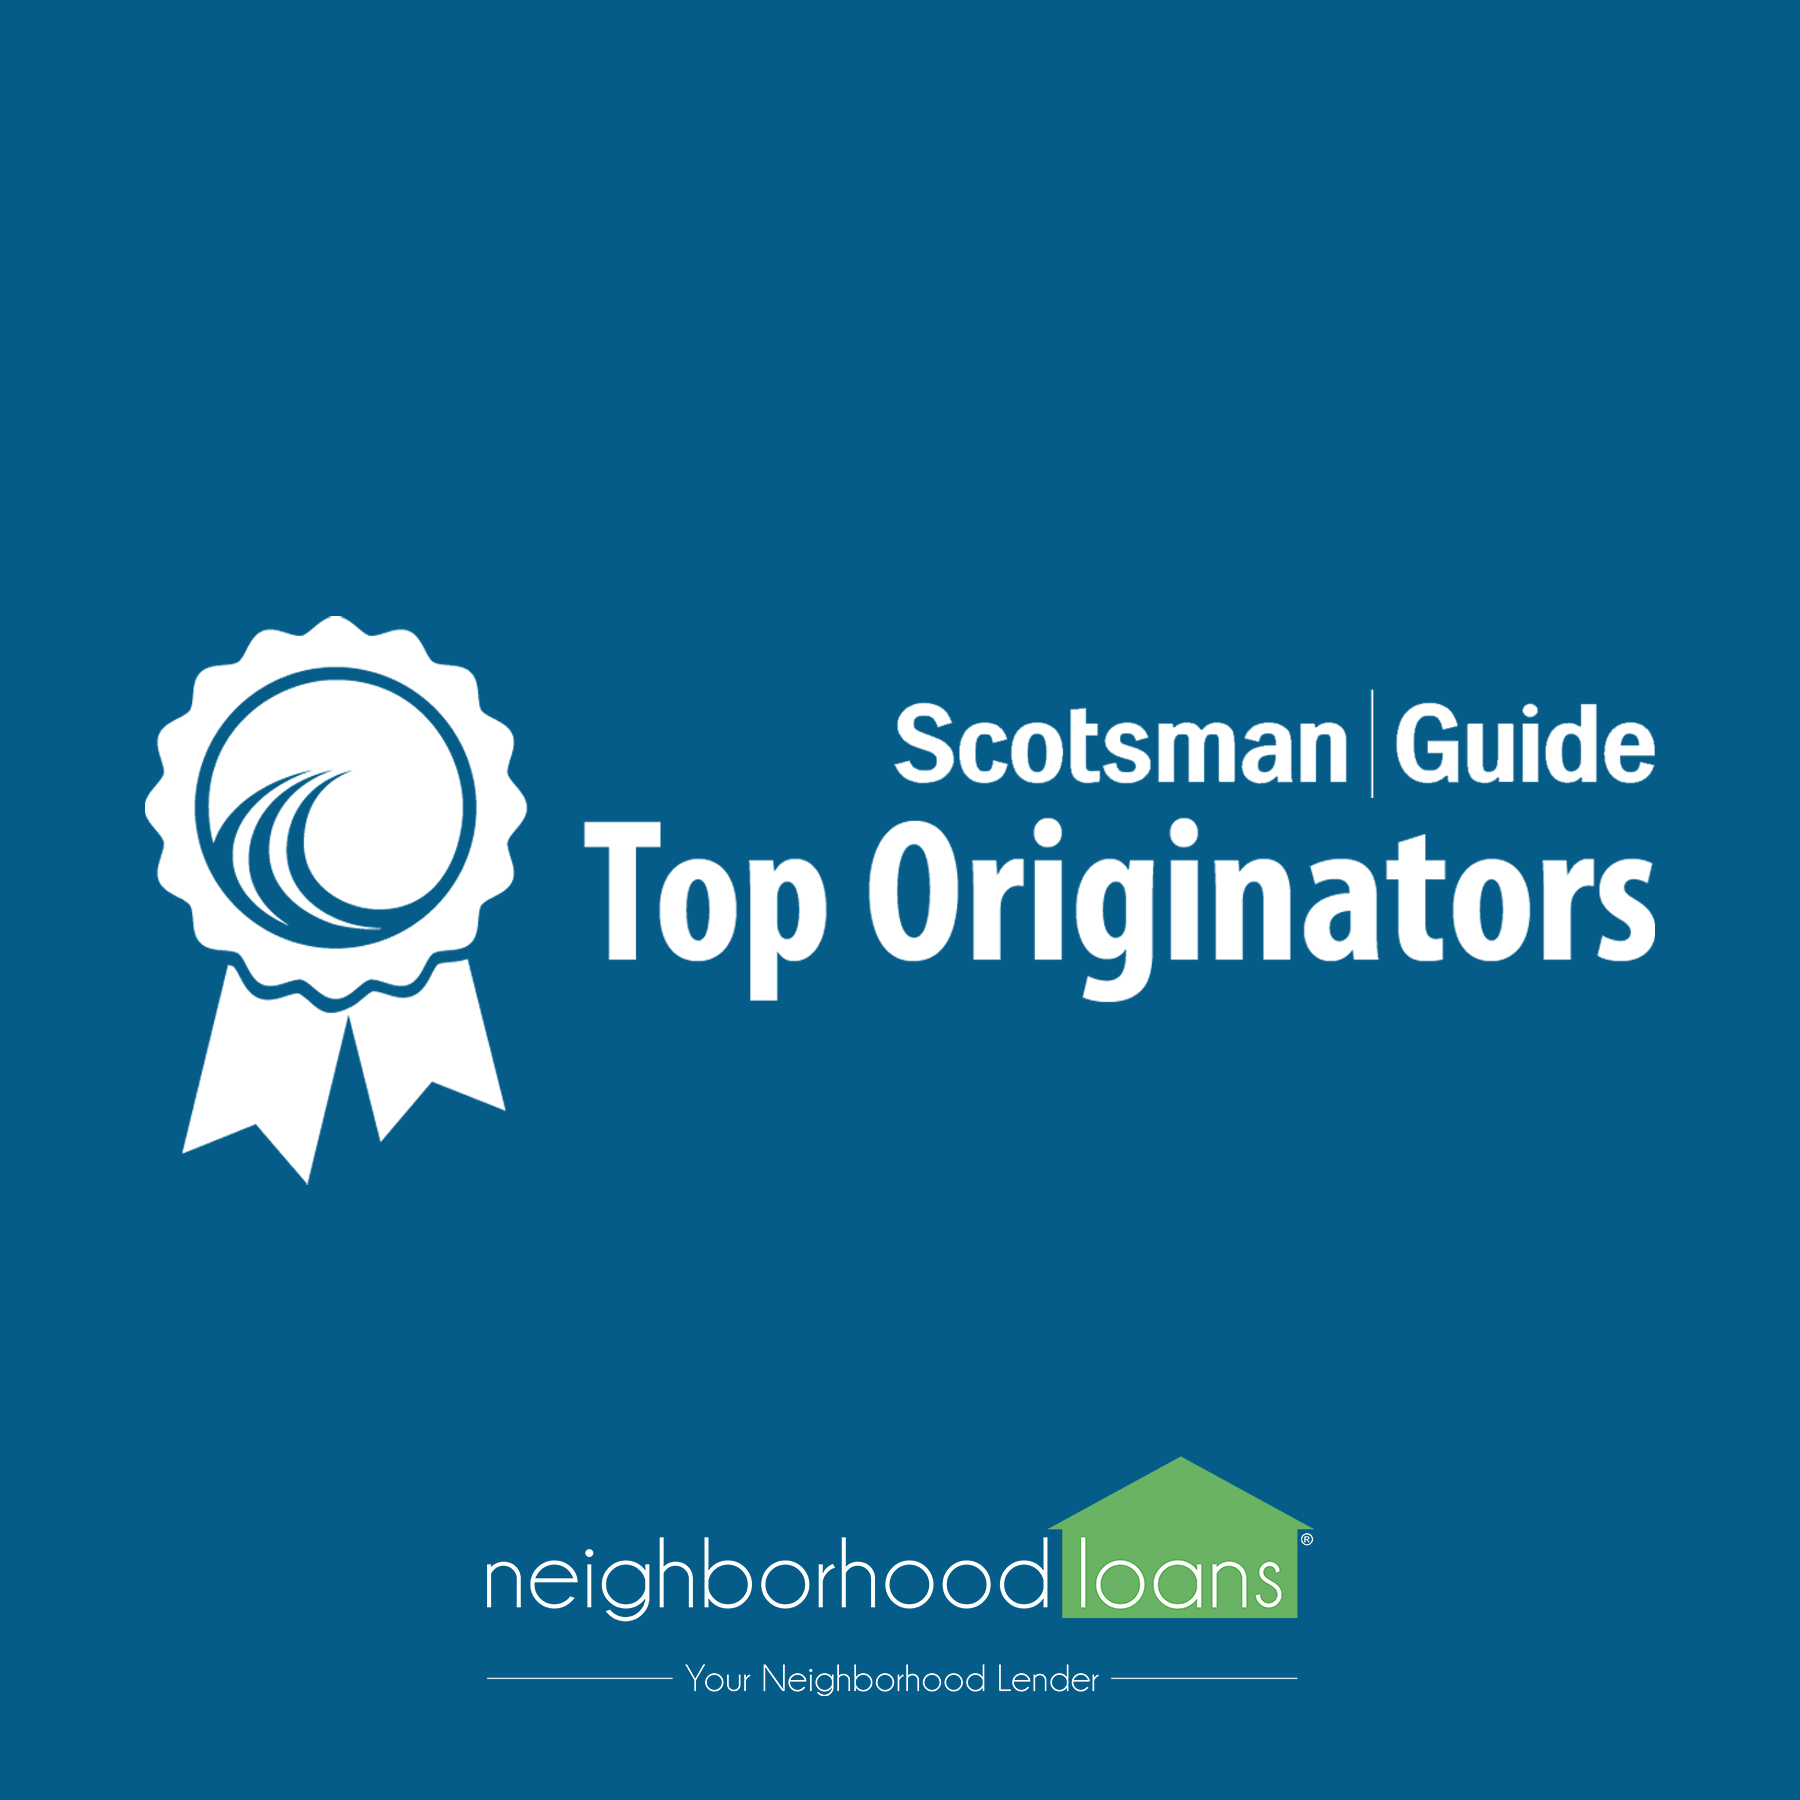 Scotsman Guide Recognizes Five Of Neighborhood Loans Top Originators